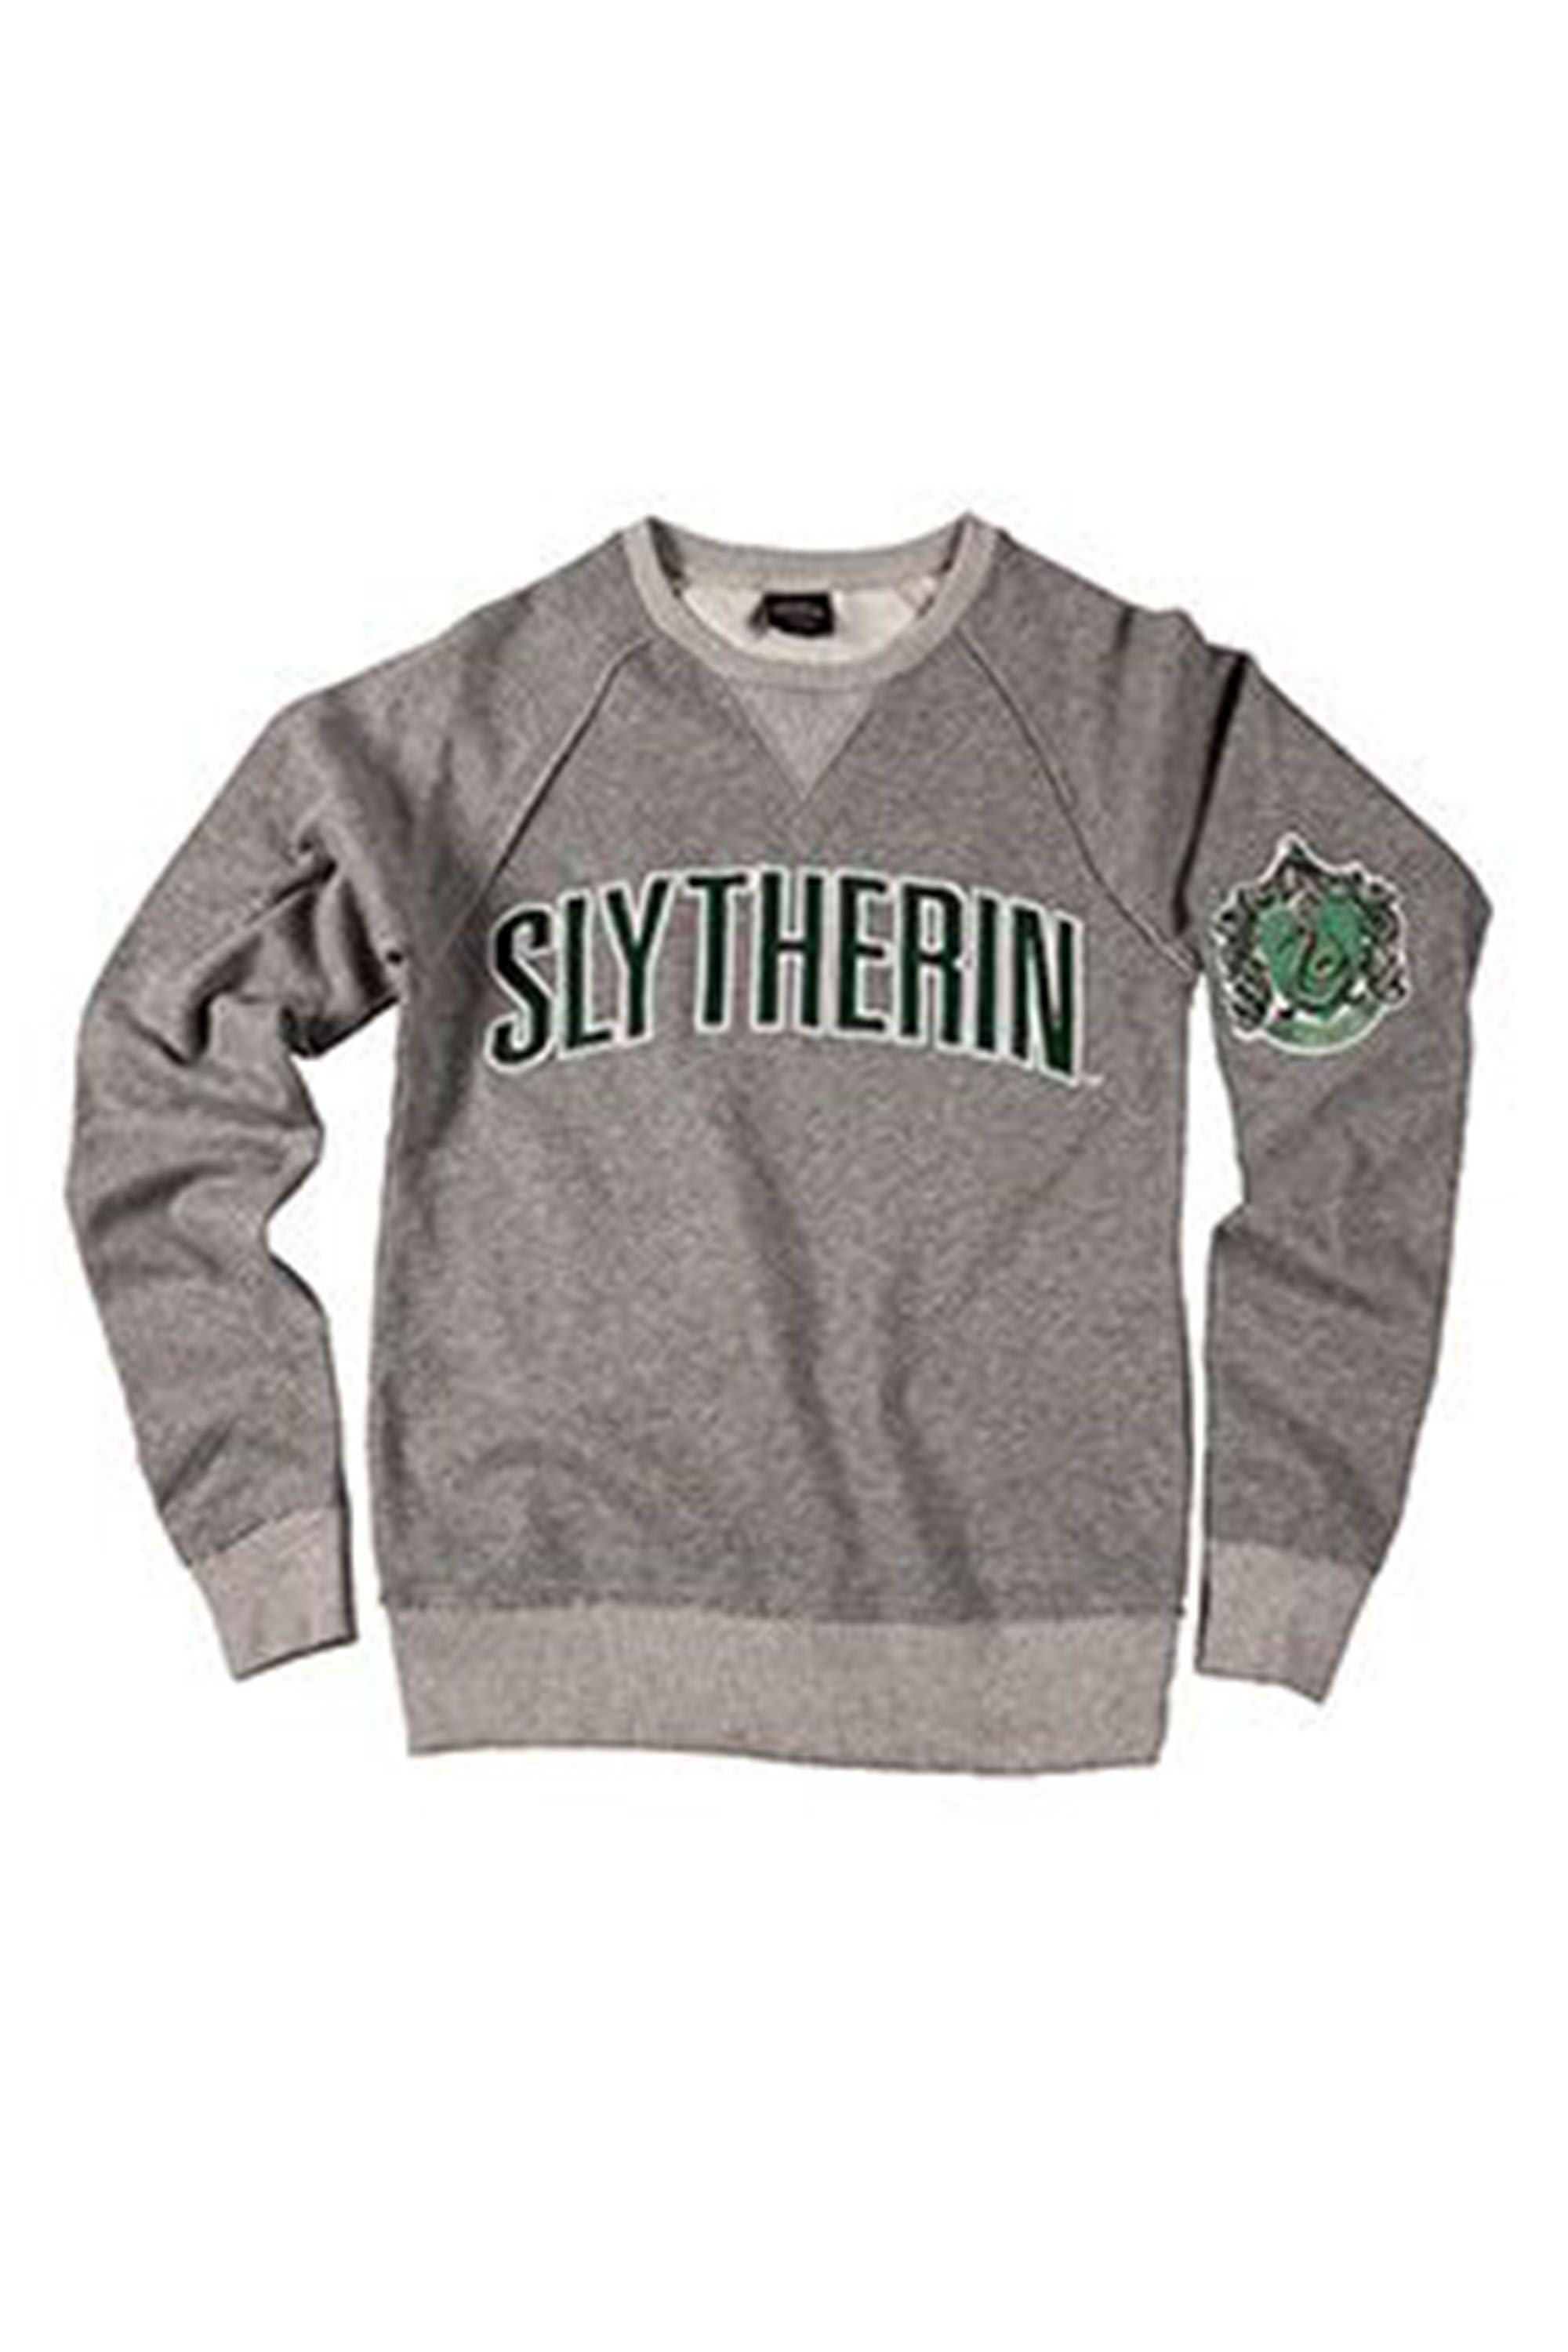 Slytherin Men's Sweatshirt